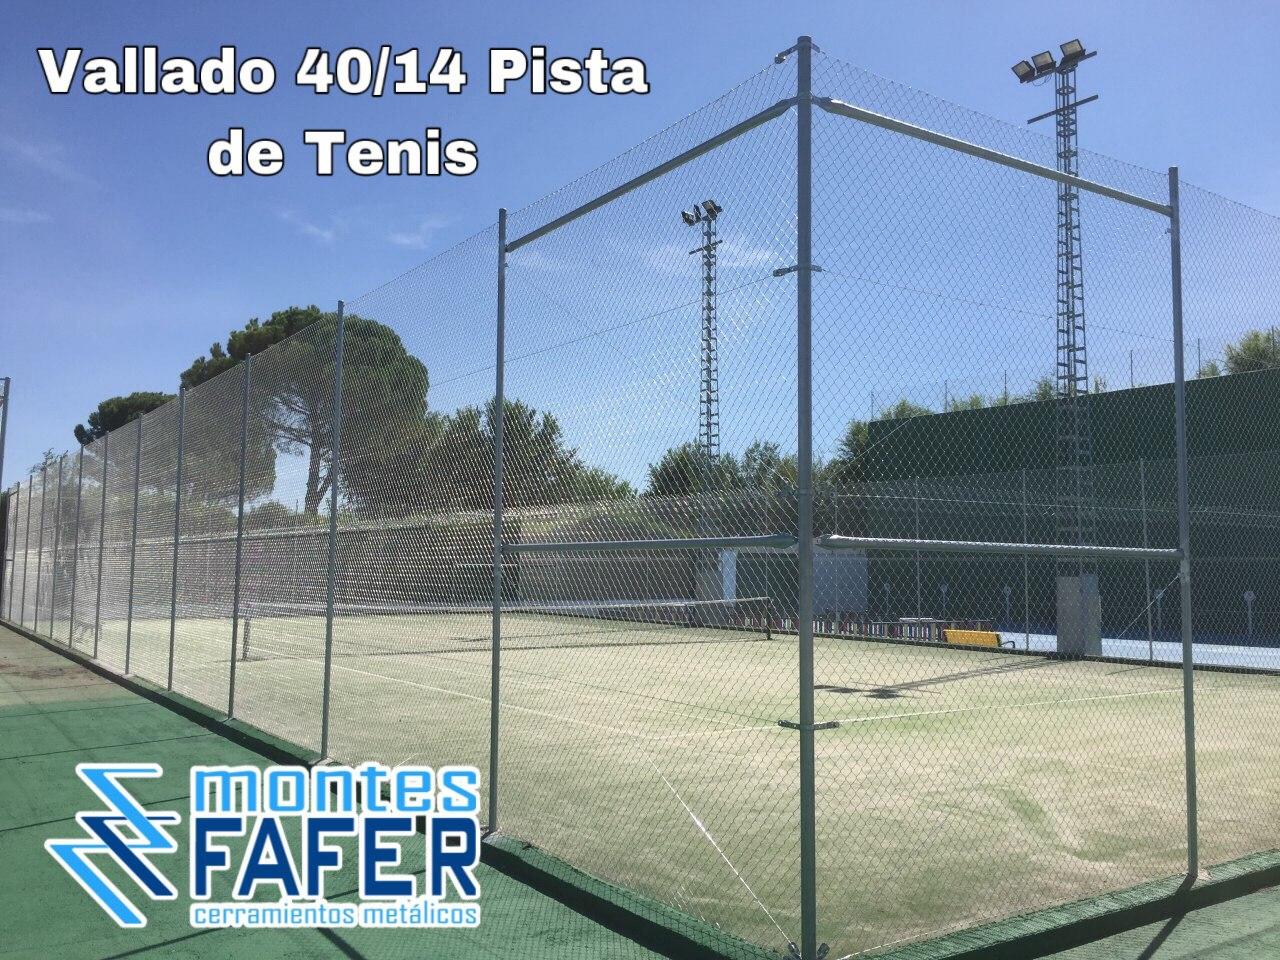 Vallado 40/14 pista de tenis MontesFafer